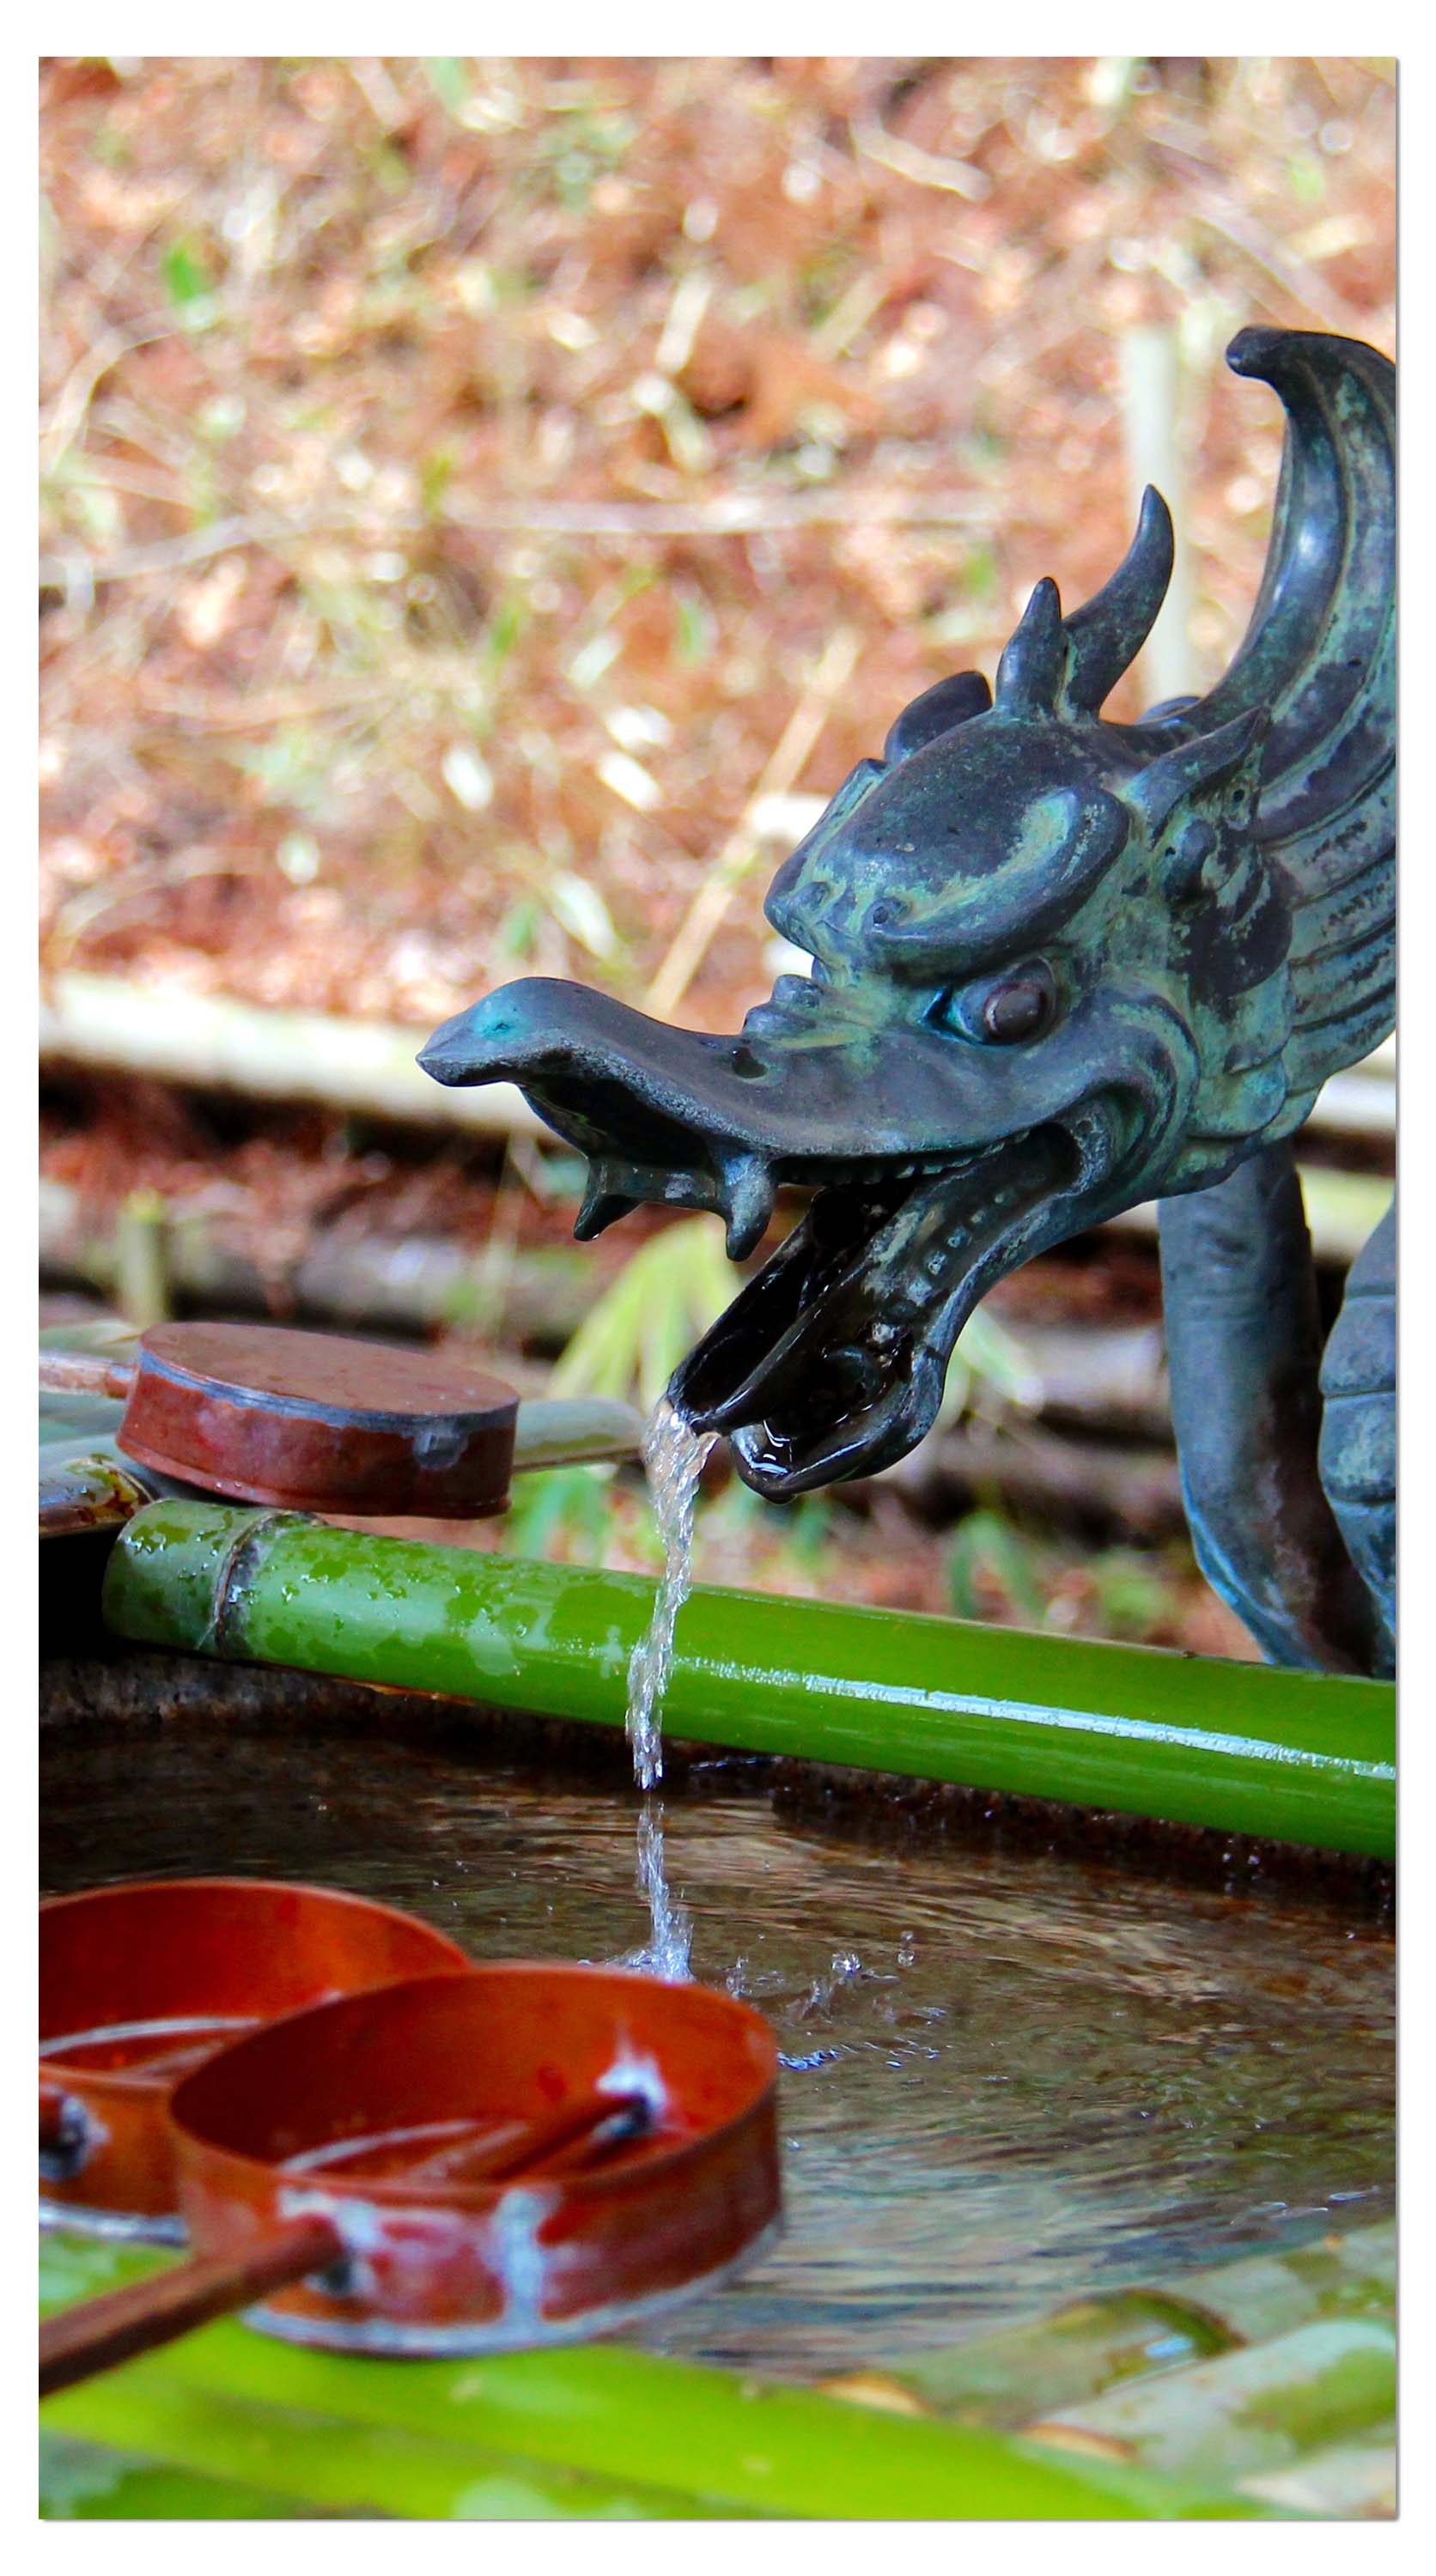 Garderobe Brunnen im japanischen Tempelgarten M0812 entdecken - Bild 4